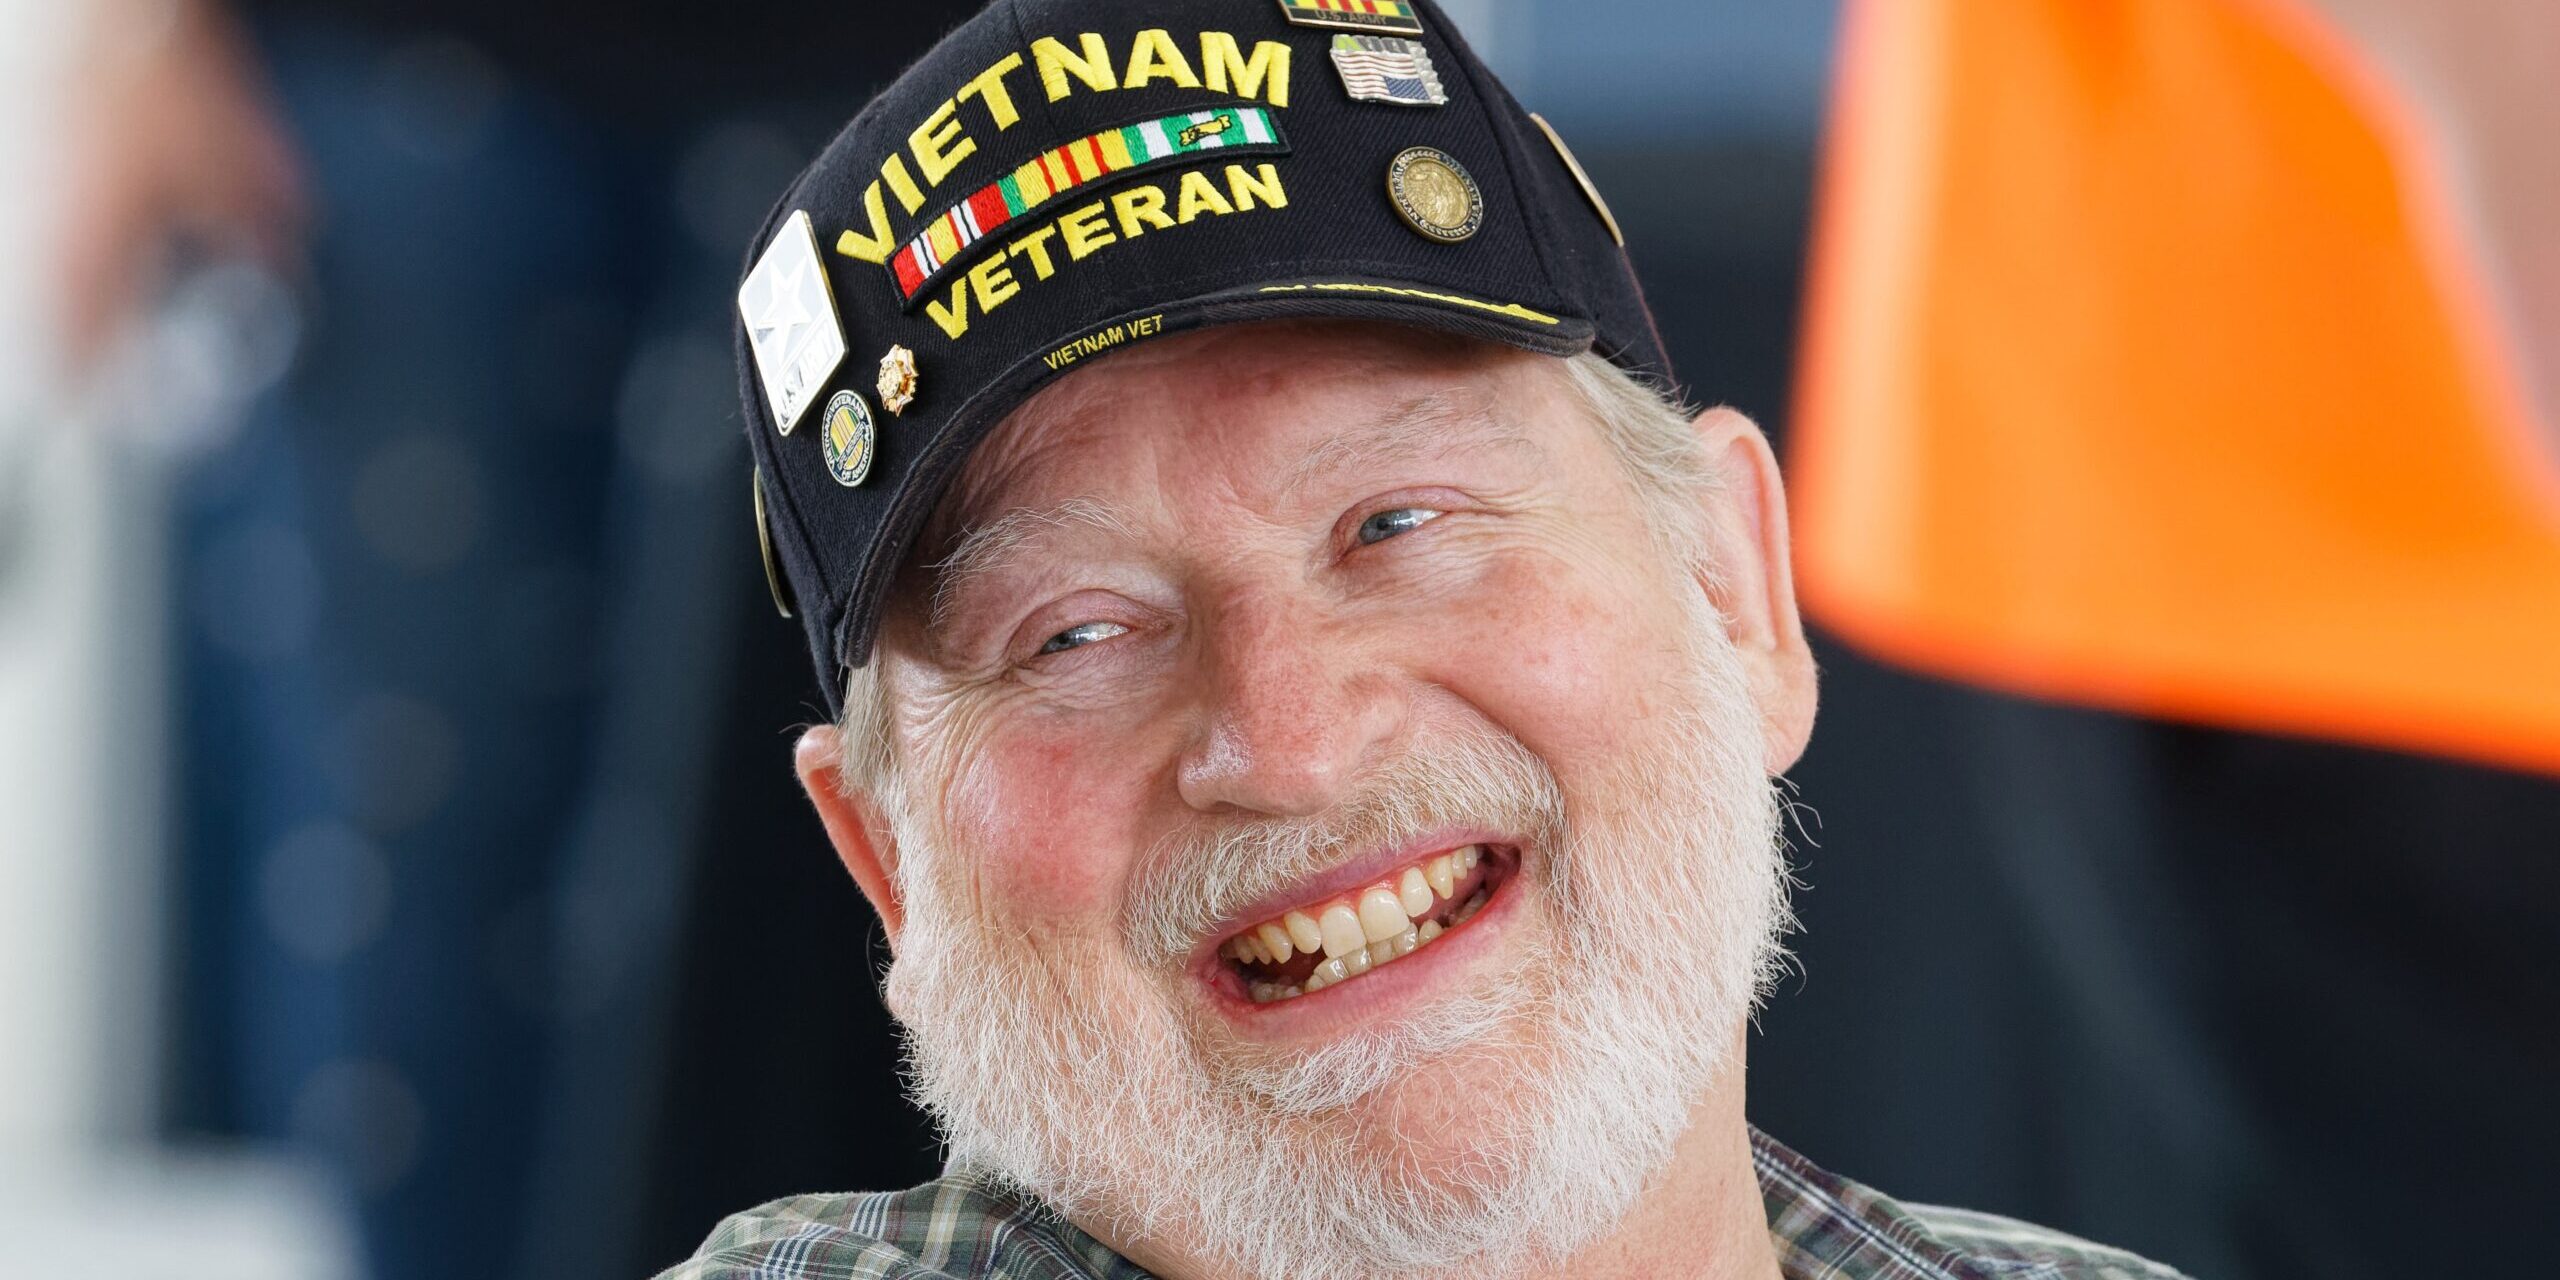 A gentleman with a white beard with a Vietnam War veteran hat on.